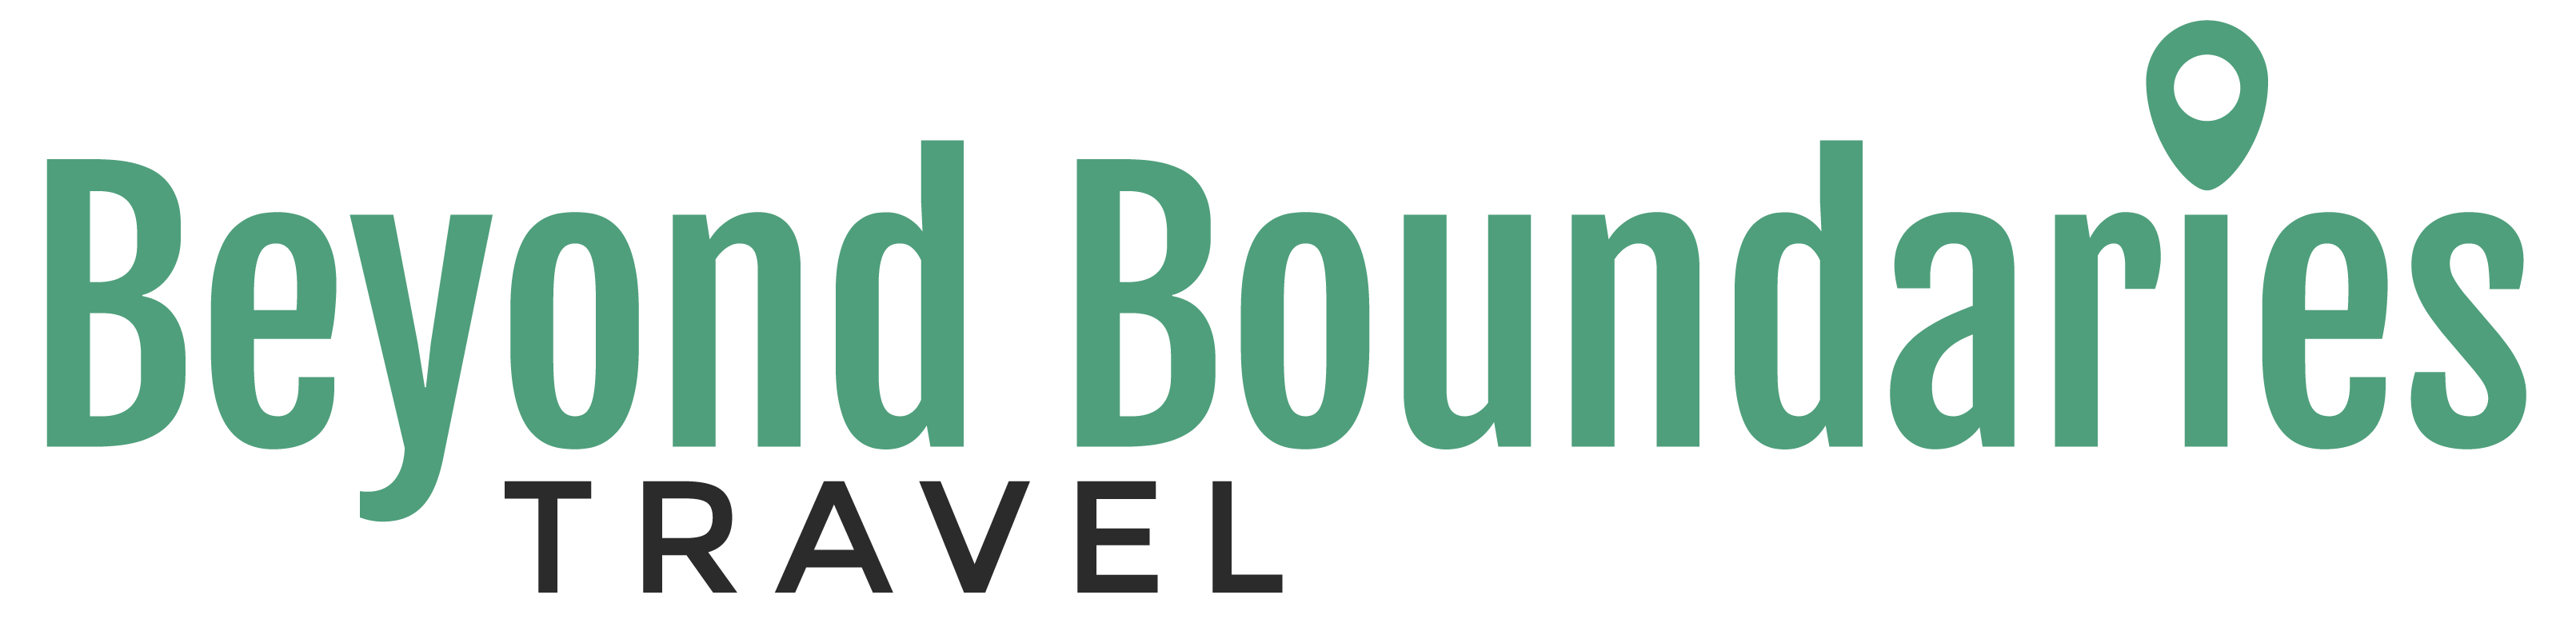 Beyond Boundaries Travel logo